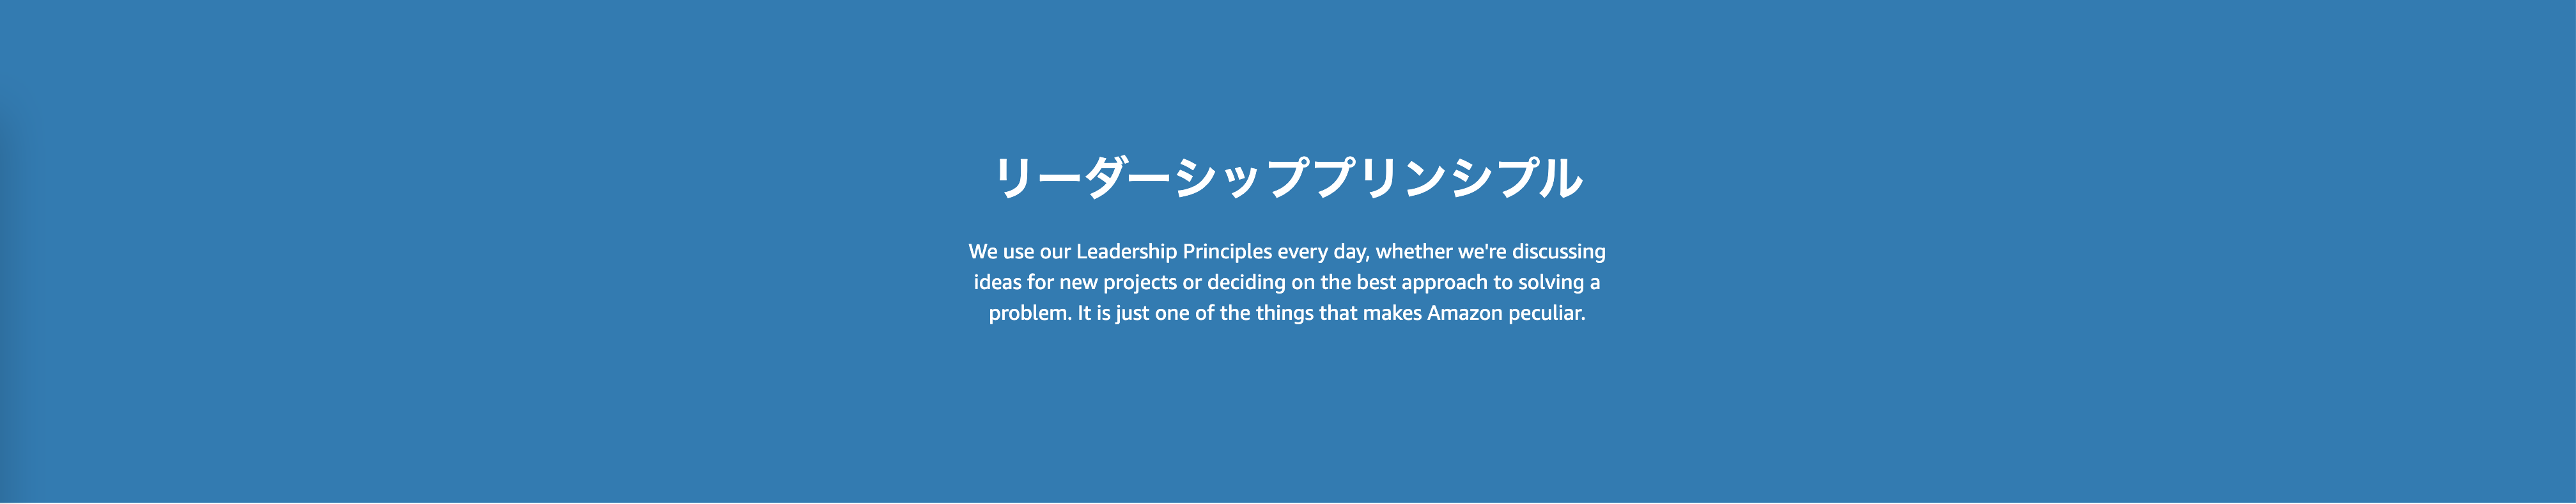 リーダーシッププリンシプル (Our Leadership Principles)に2項目追加〜アマゾン｜Amazon